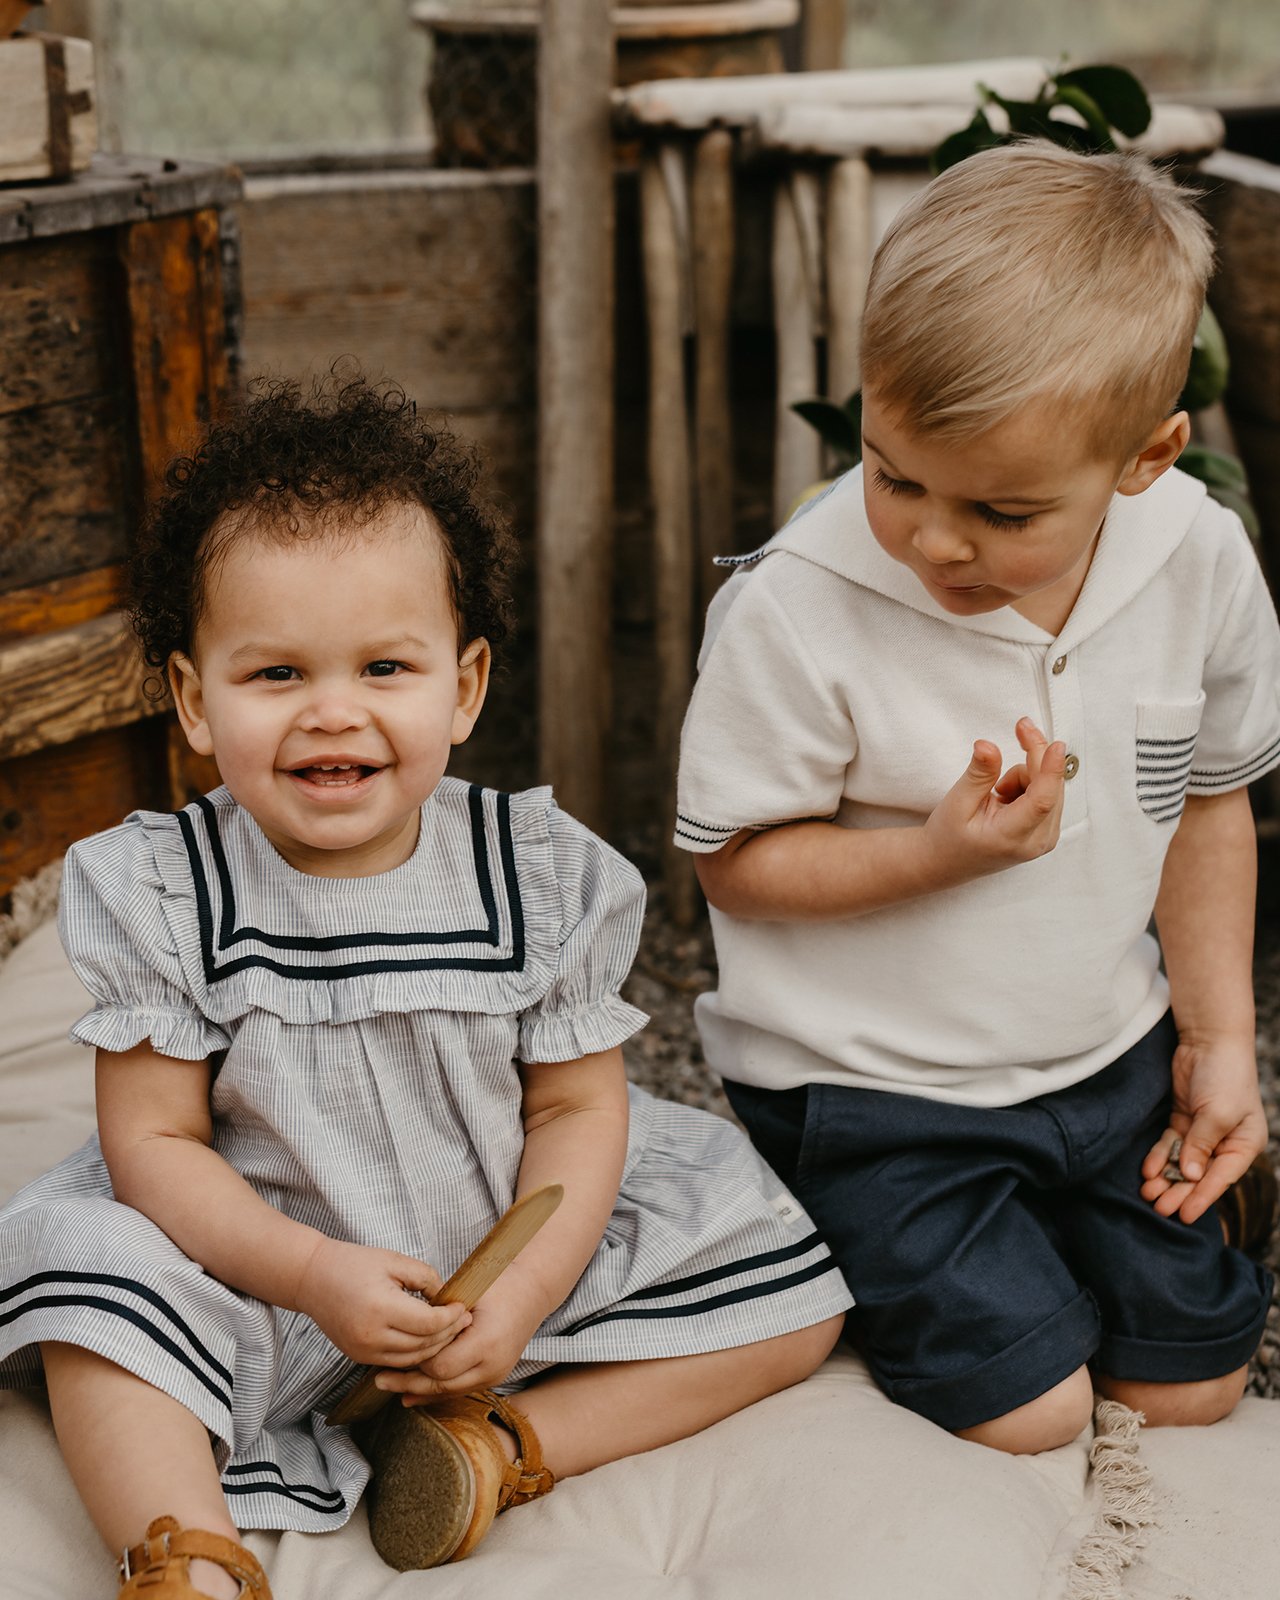 Vauva sinisellä mekolla ja lapsi aloittelijoiden vaatteilla